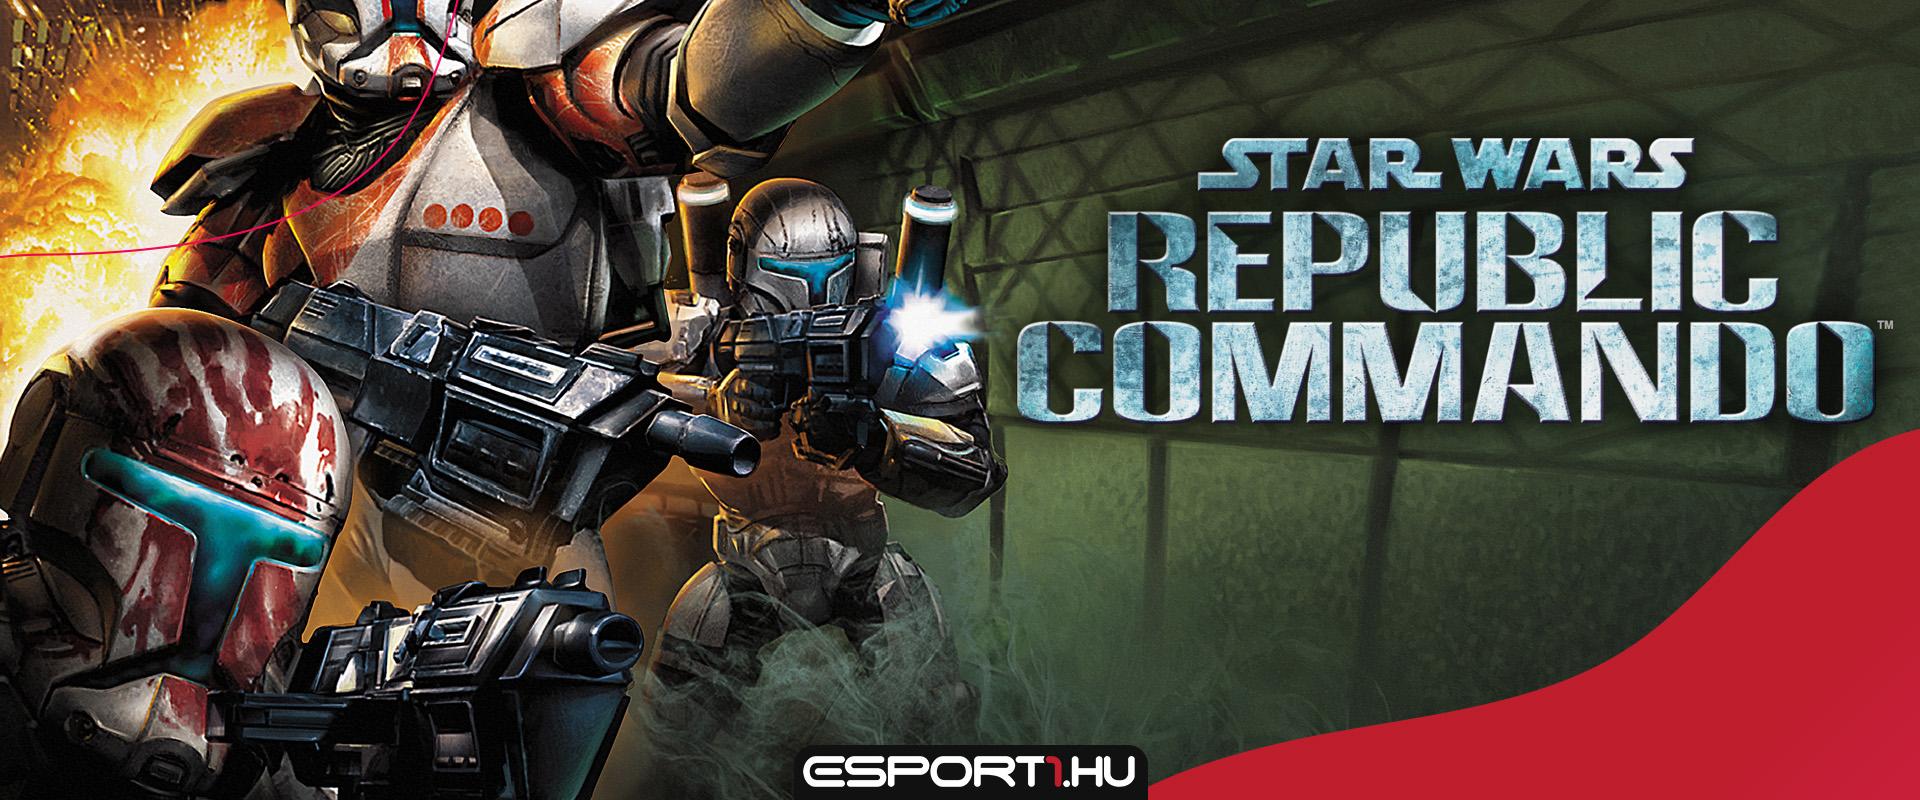 Gyűjtői kiadással tér vissza a Star Wars: Republic Commando